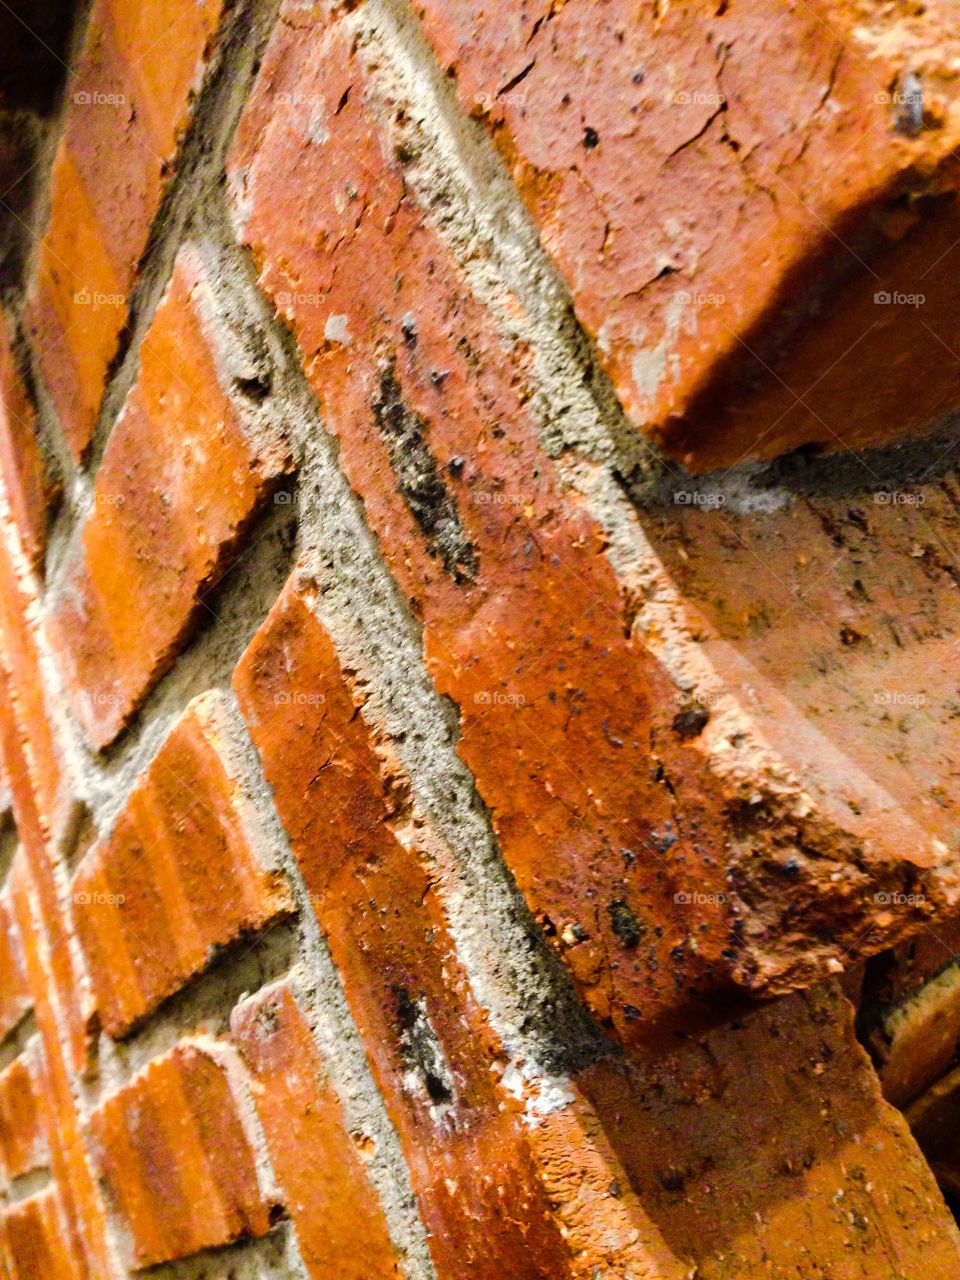 The wall. Wall of bricks